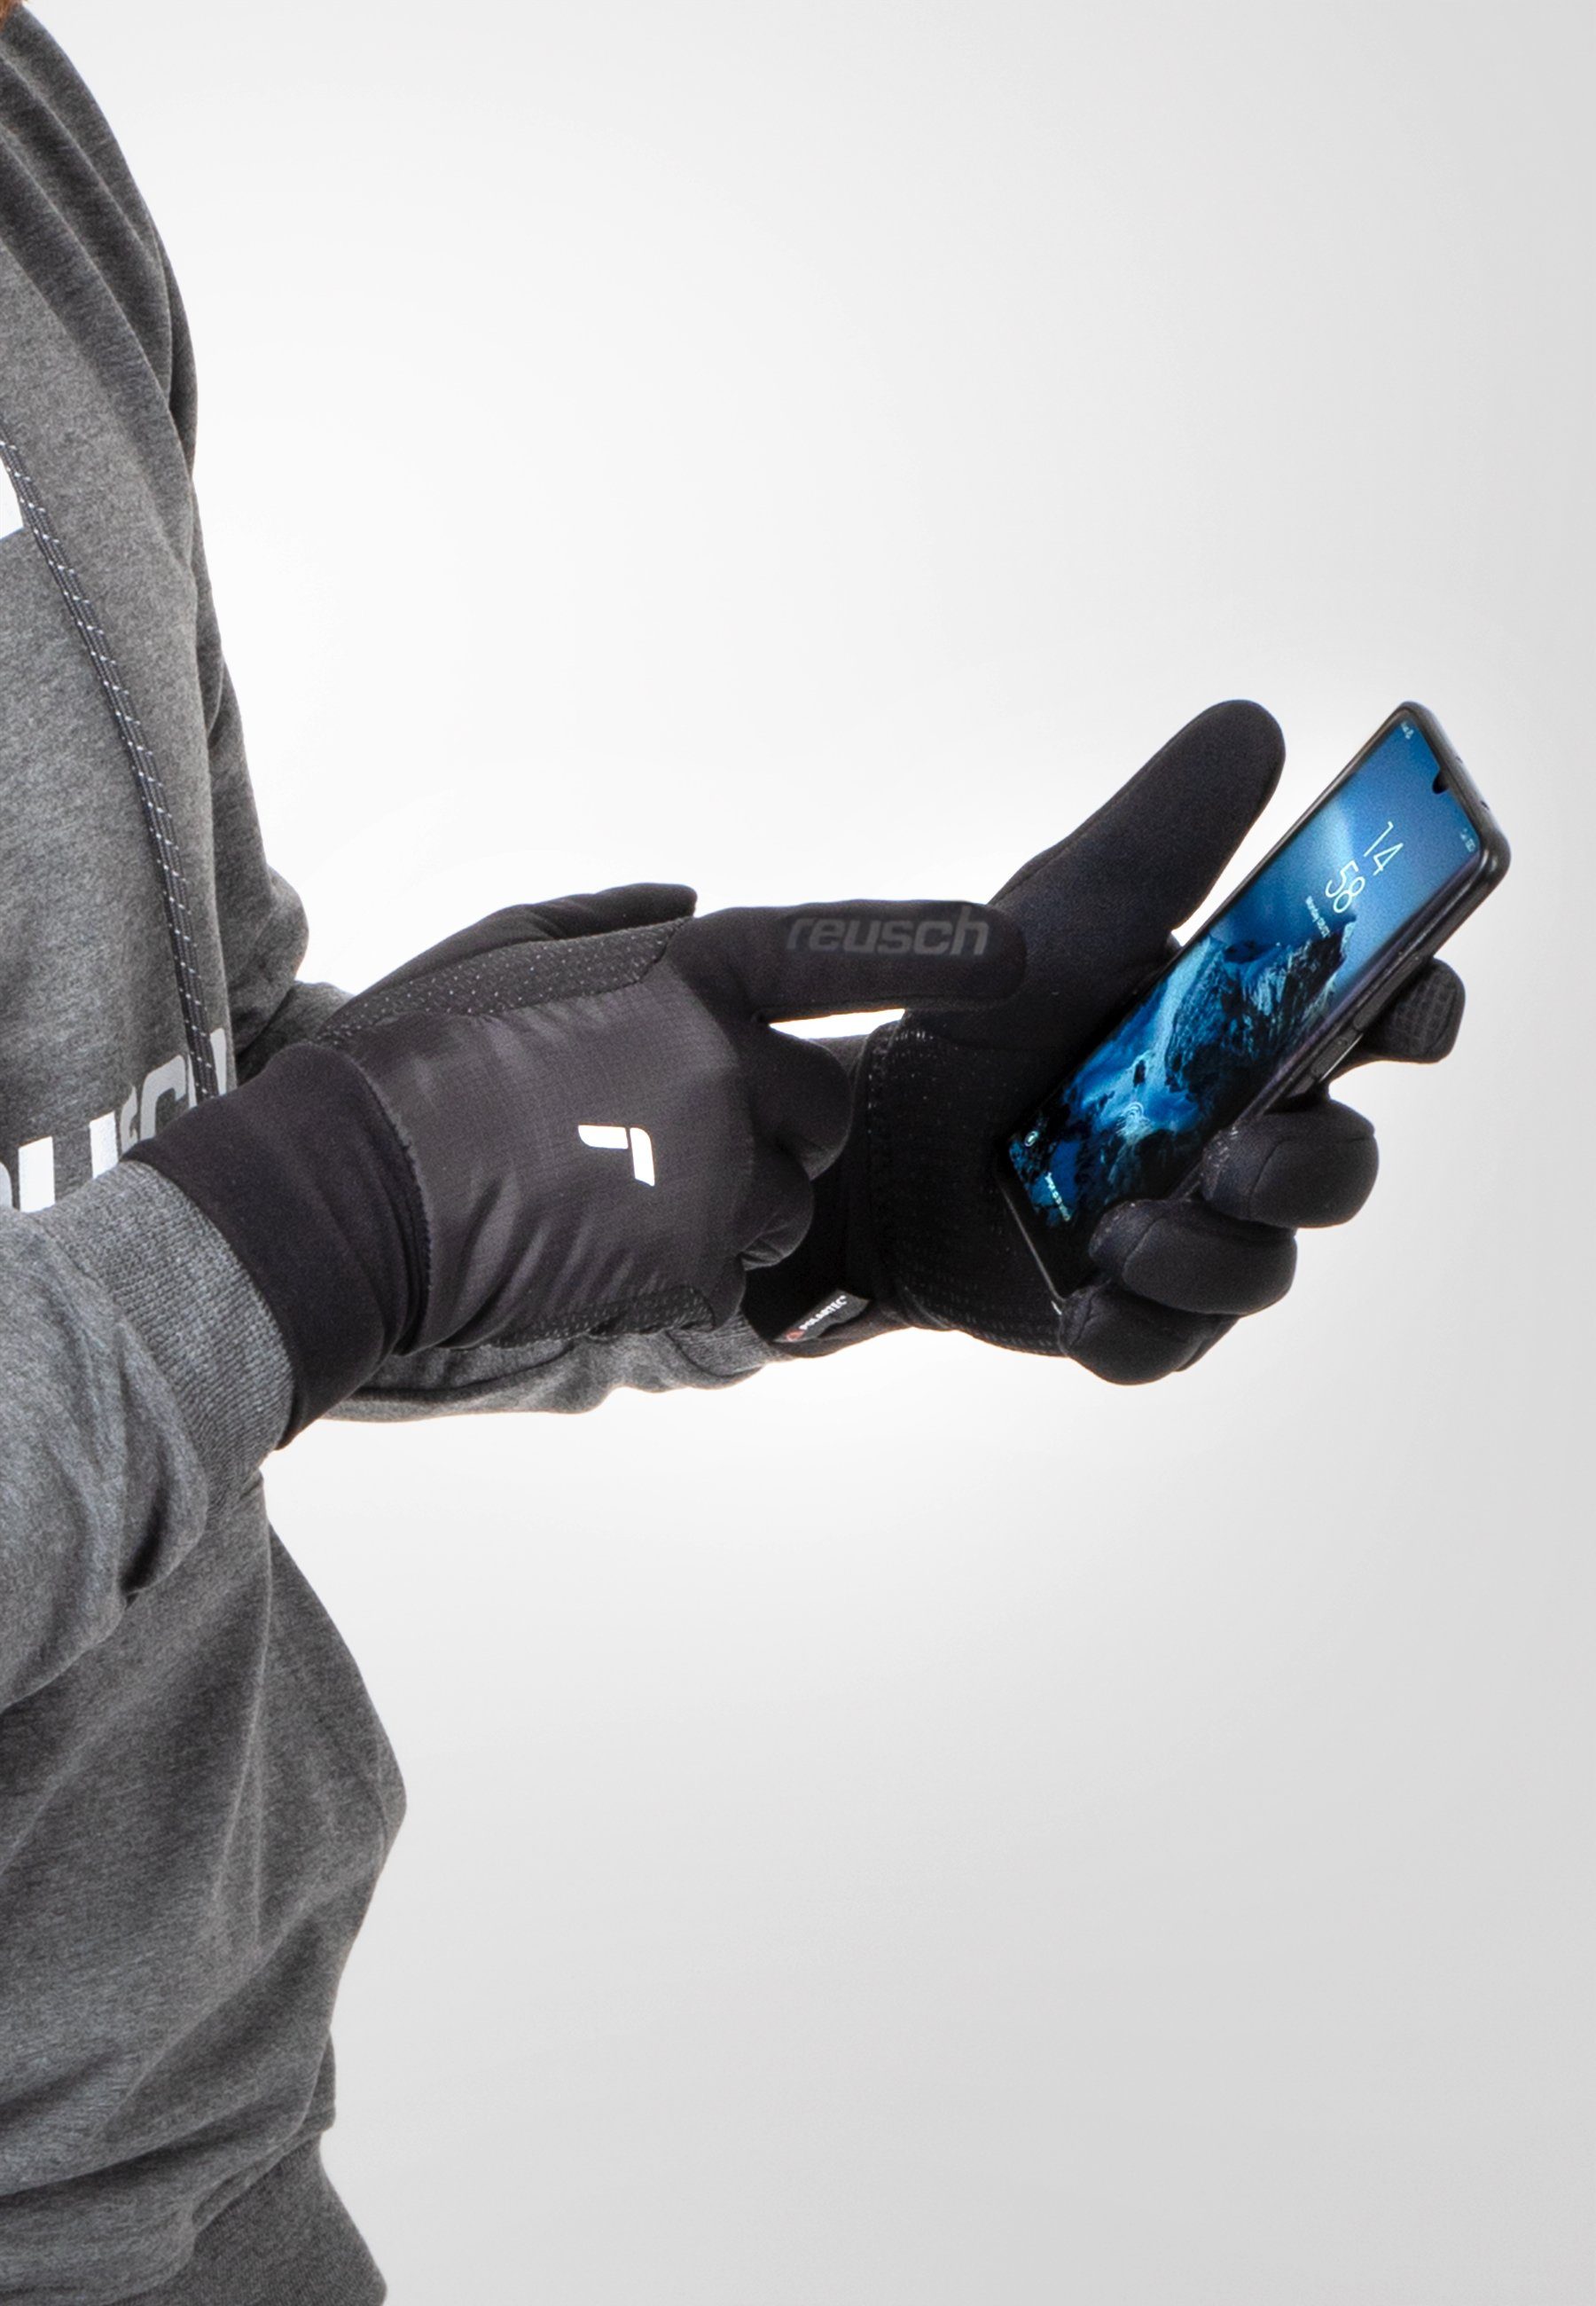 Garhwal praktischer Reusch Skihandschuhe schwarz-silberfarben mit Hybrid Touchscreen-Funktion